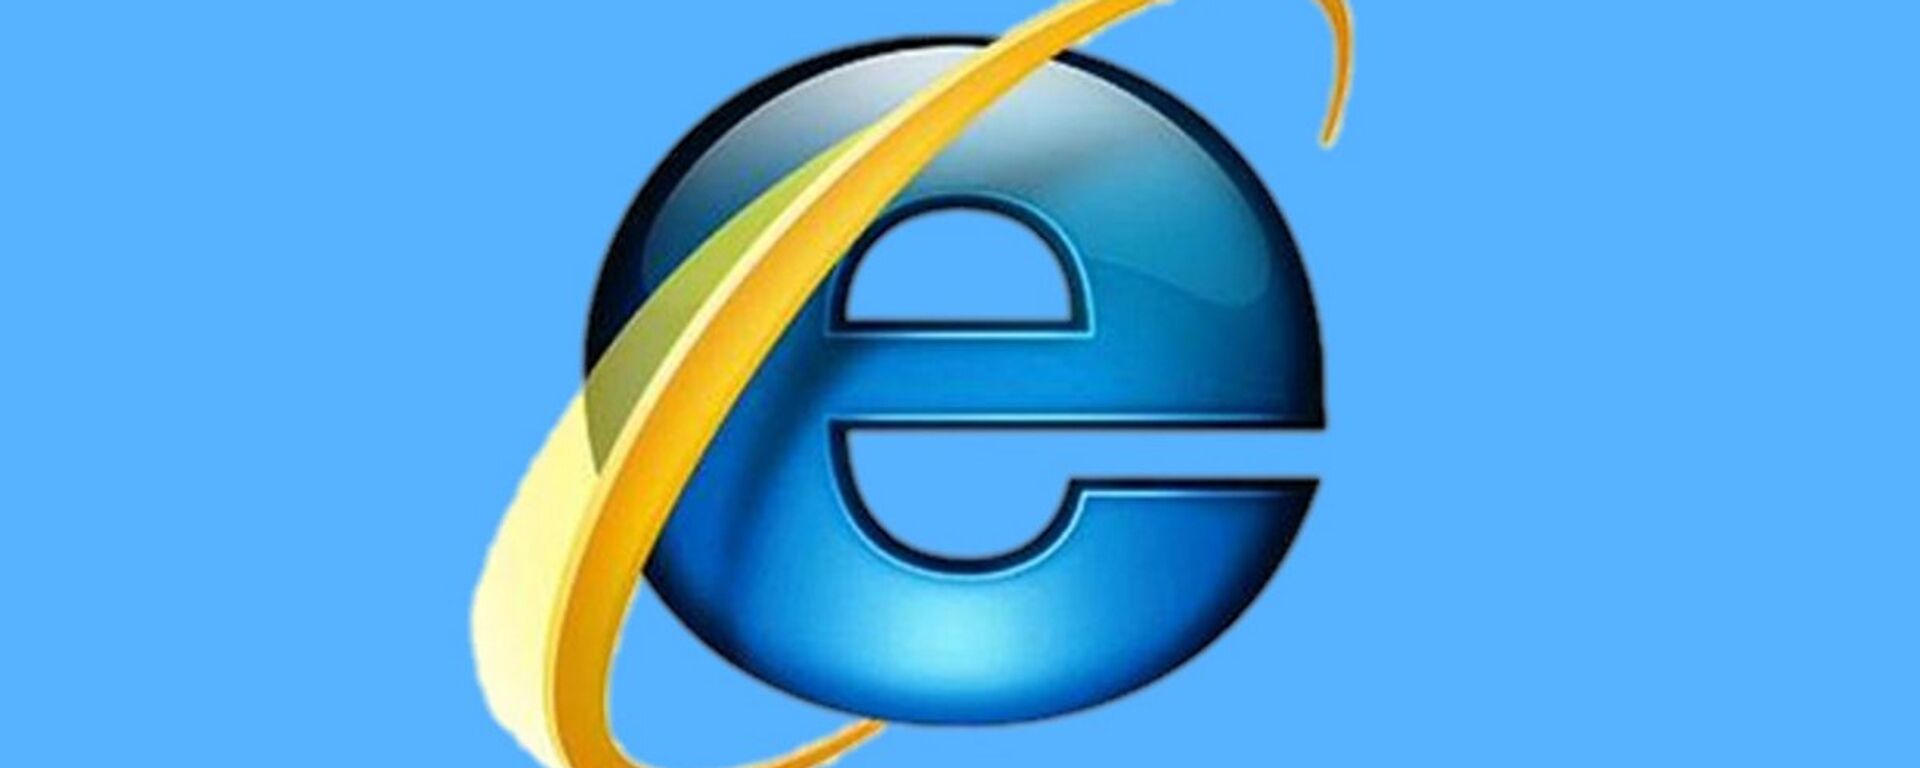 Internet Explorer - Sputnik Türkiye, 1920, 21.05.2021